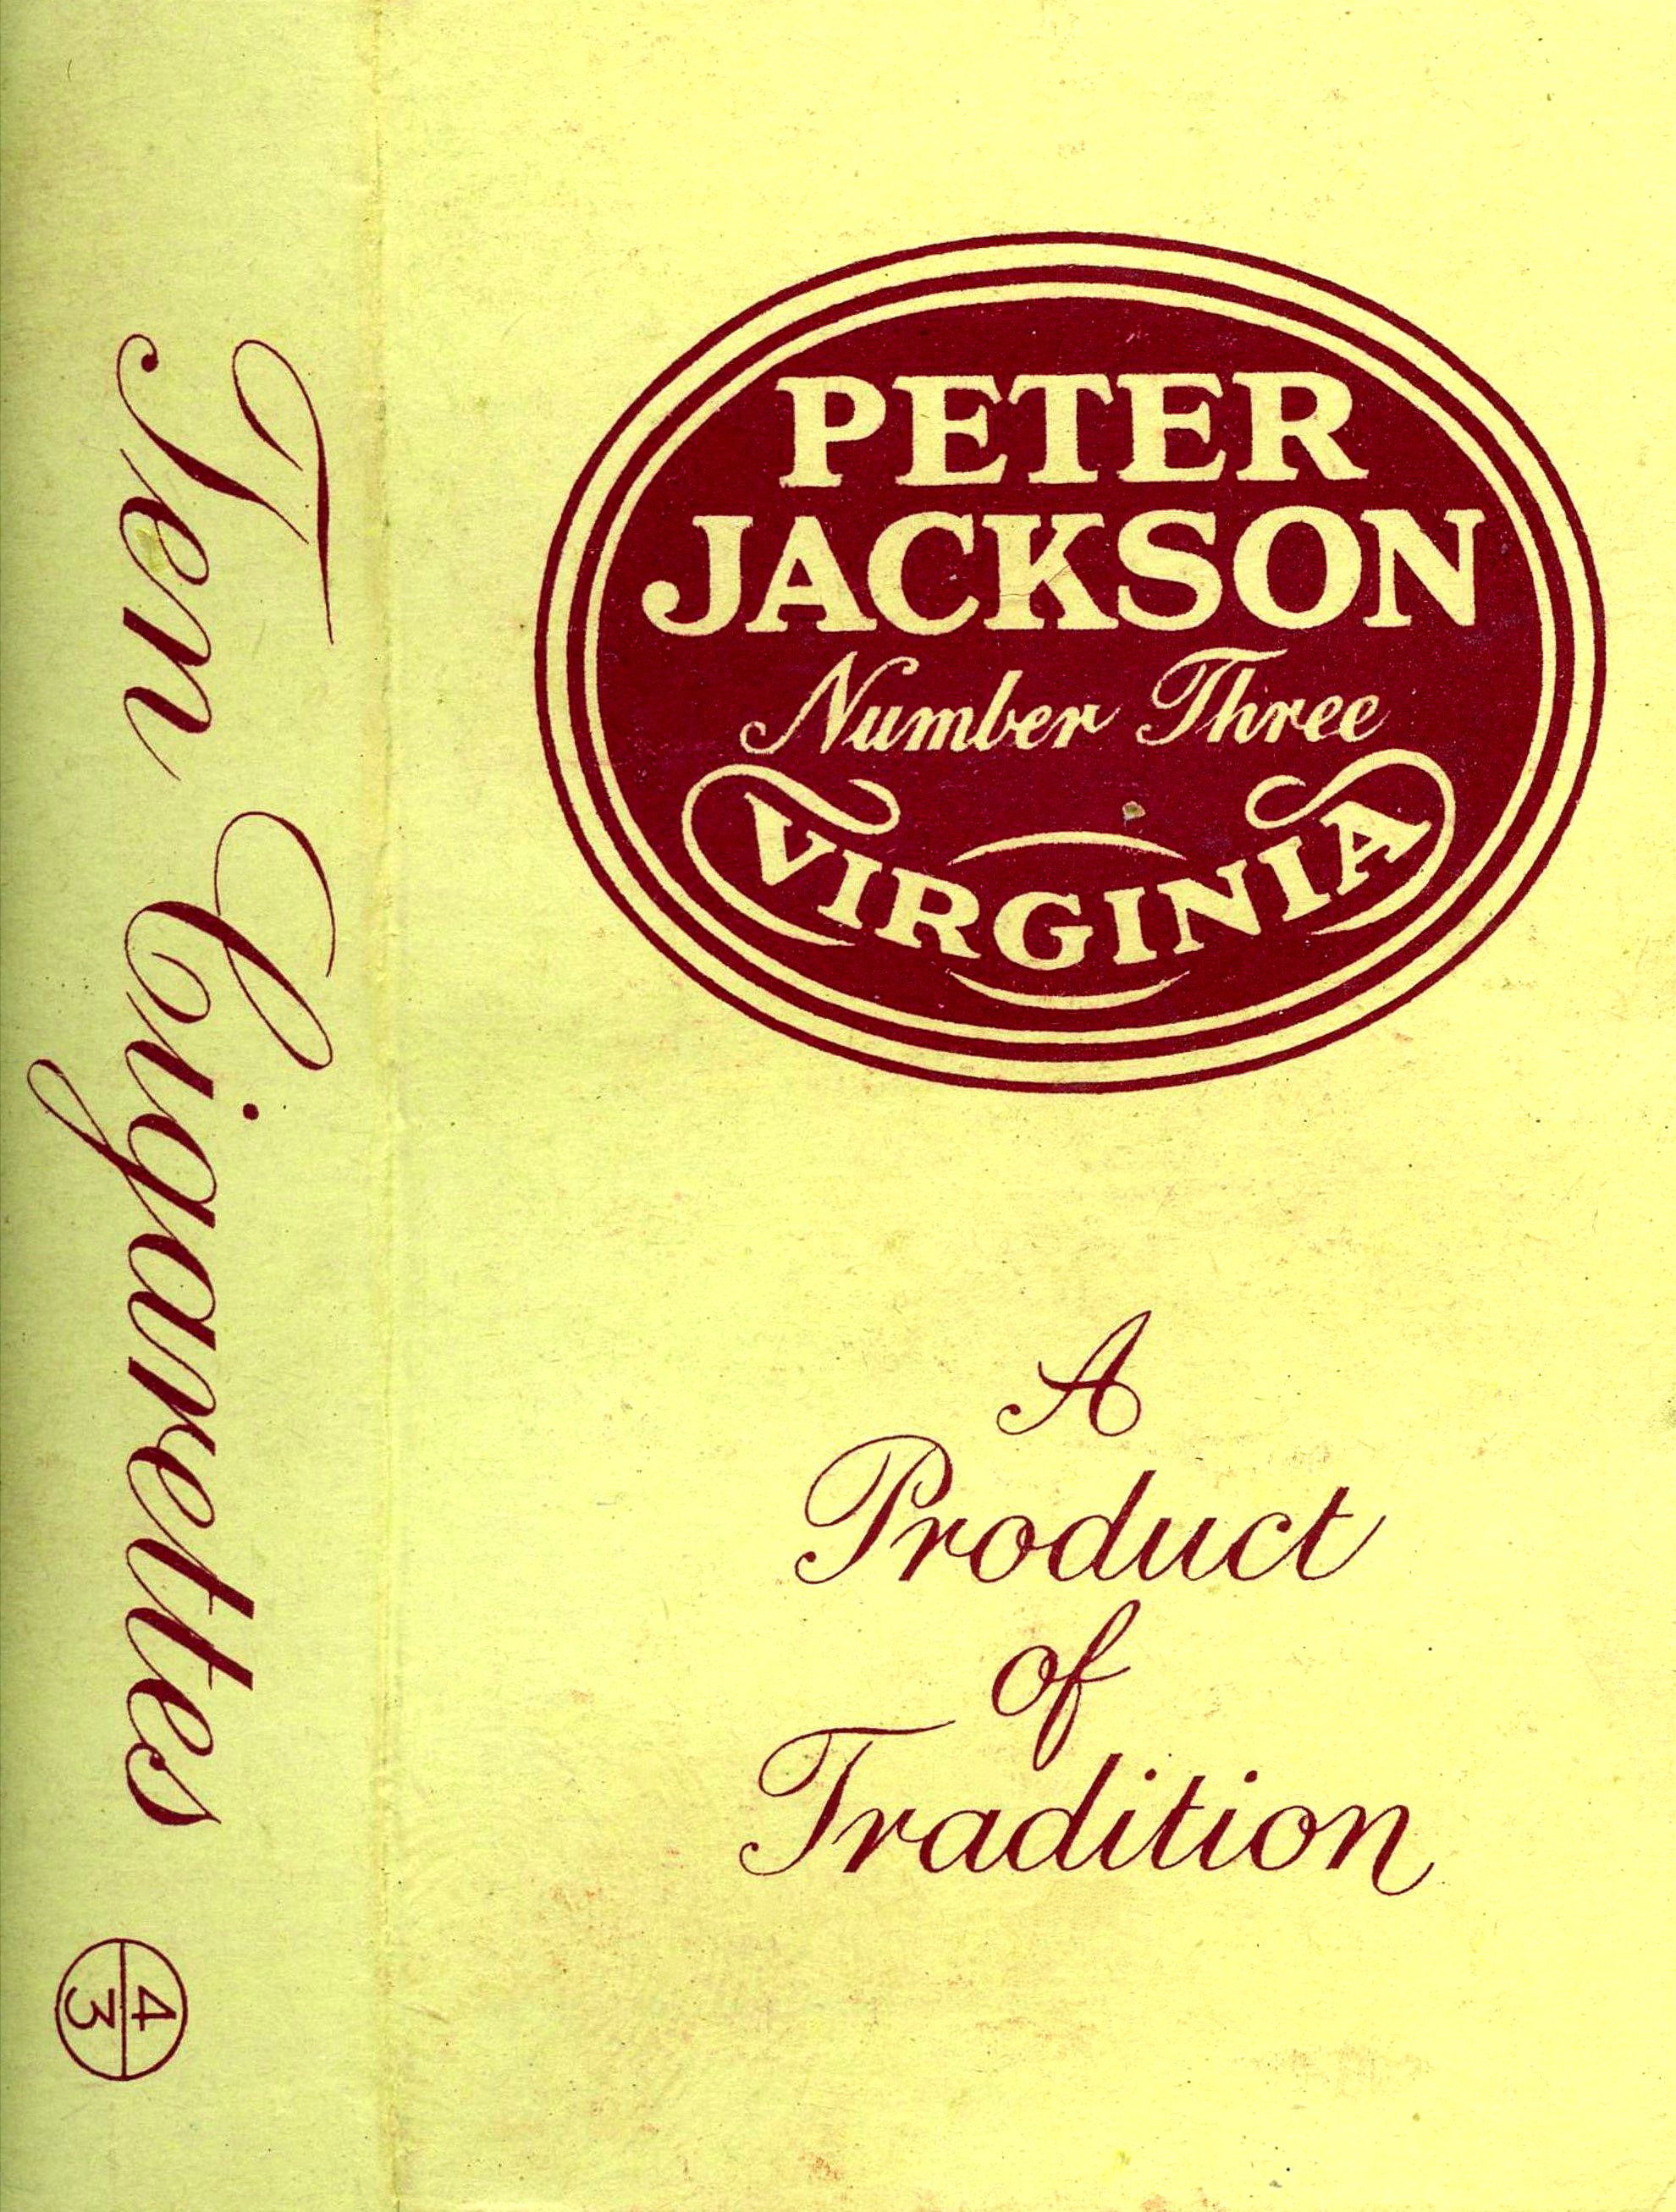 PETER JACKSON Ltd.